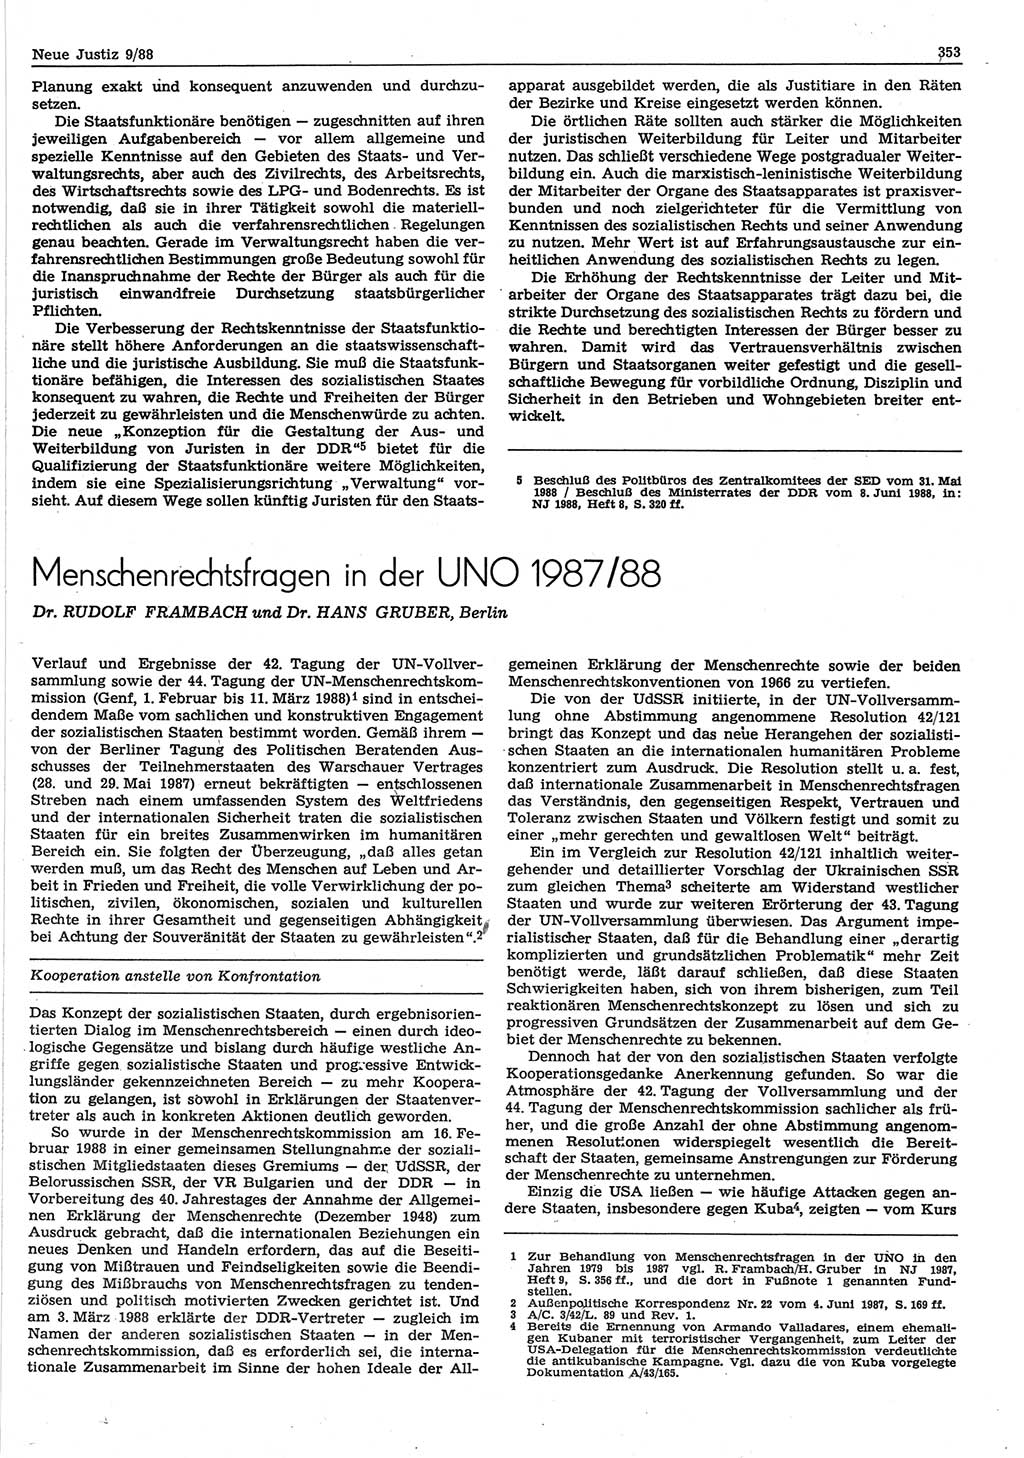 Neue Justiz (NJ), Zeitschrift für sozialistisches Recht und Gesetzlichkeit [Deutsche Demokratische Republik (DDR)], 42. Jahrgang 1988, Seite 353 (NJ DDR 1988, S. 353)